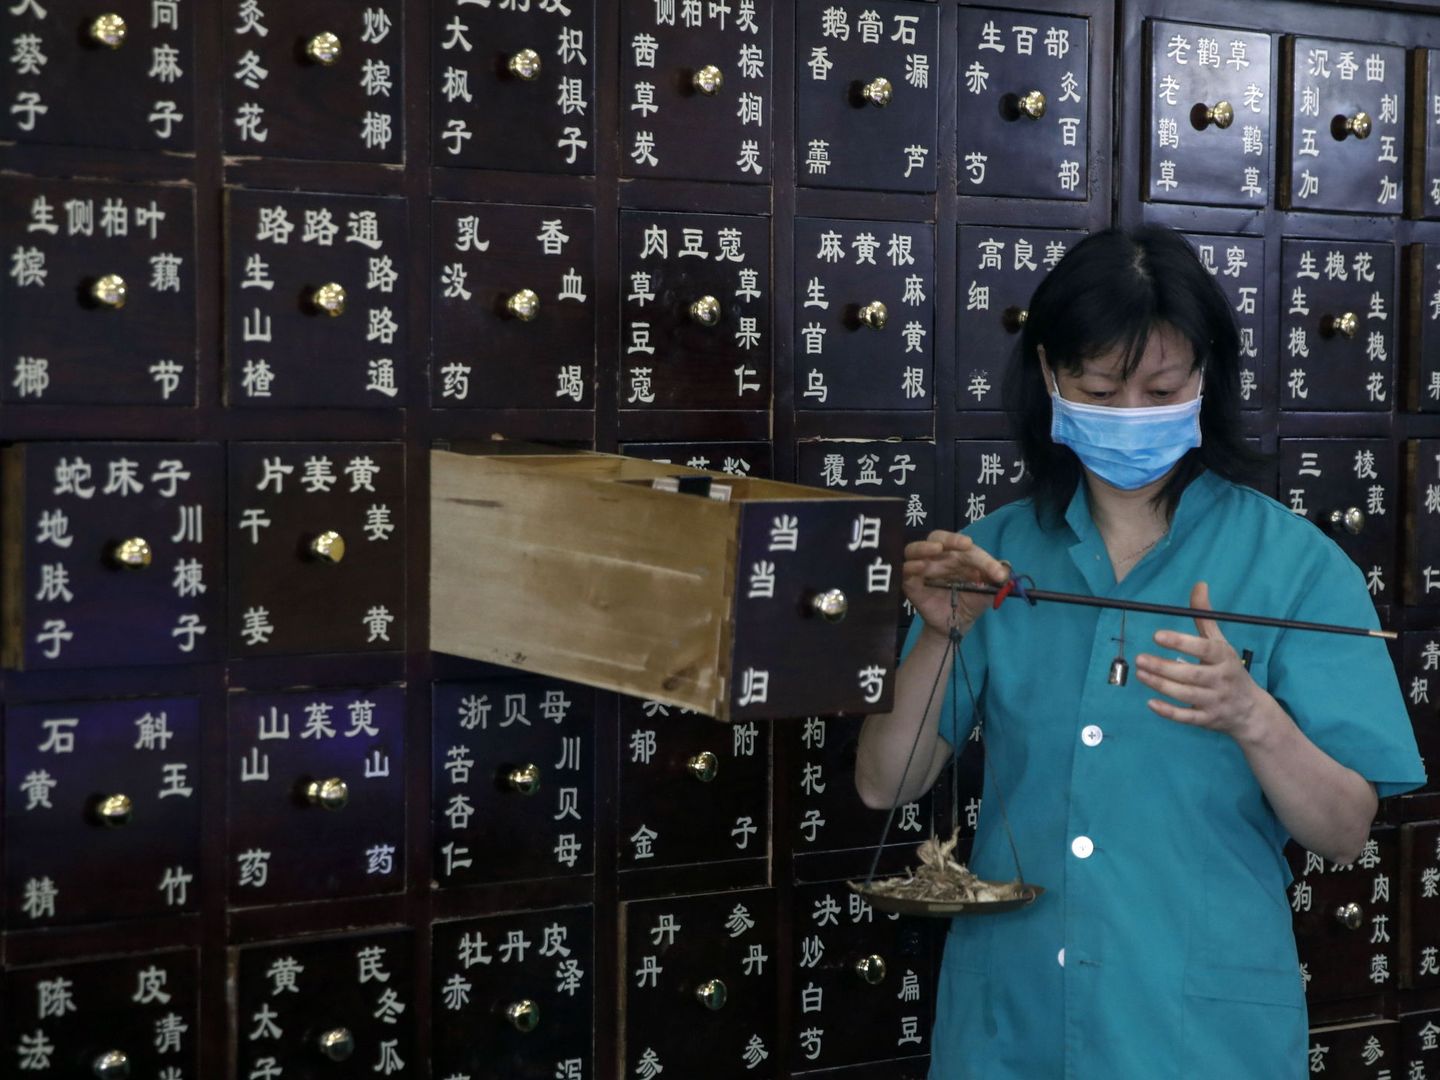 Farmacia de remedios tradicionales en Pekín (China) (EFE)